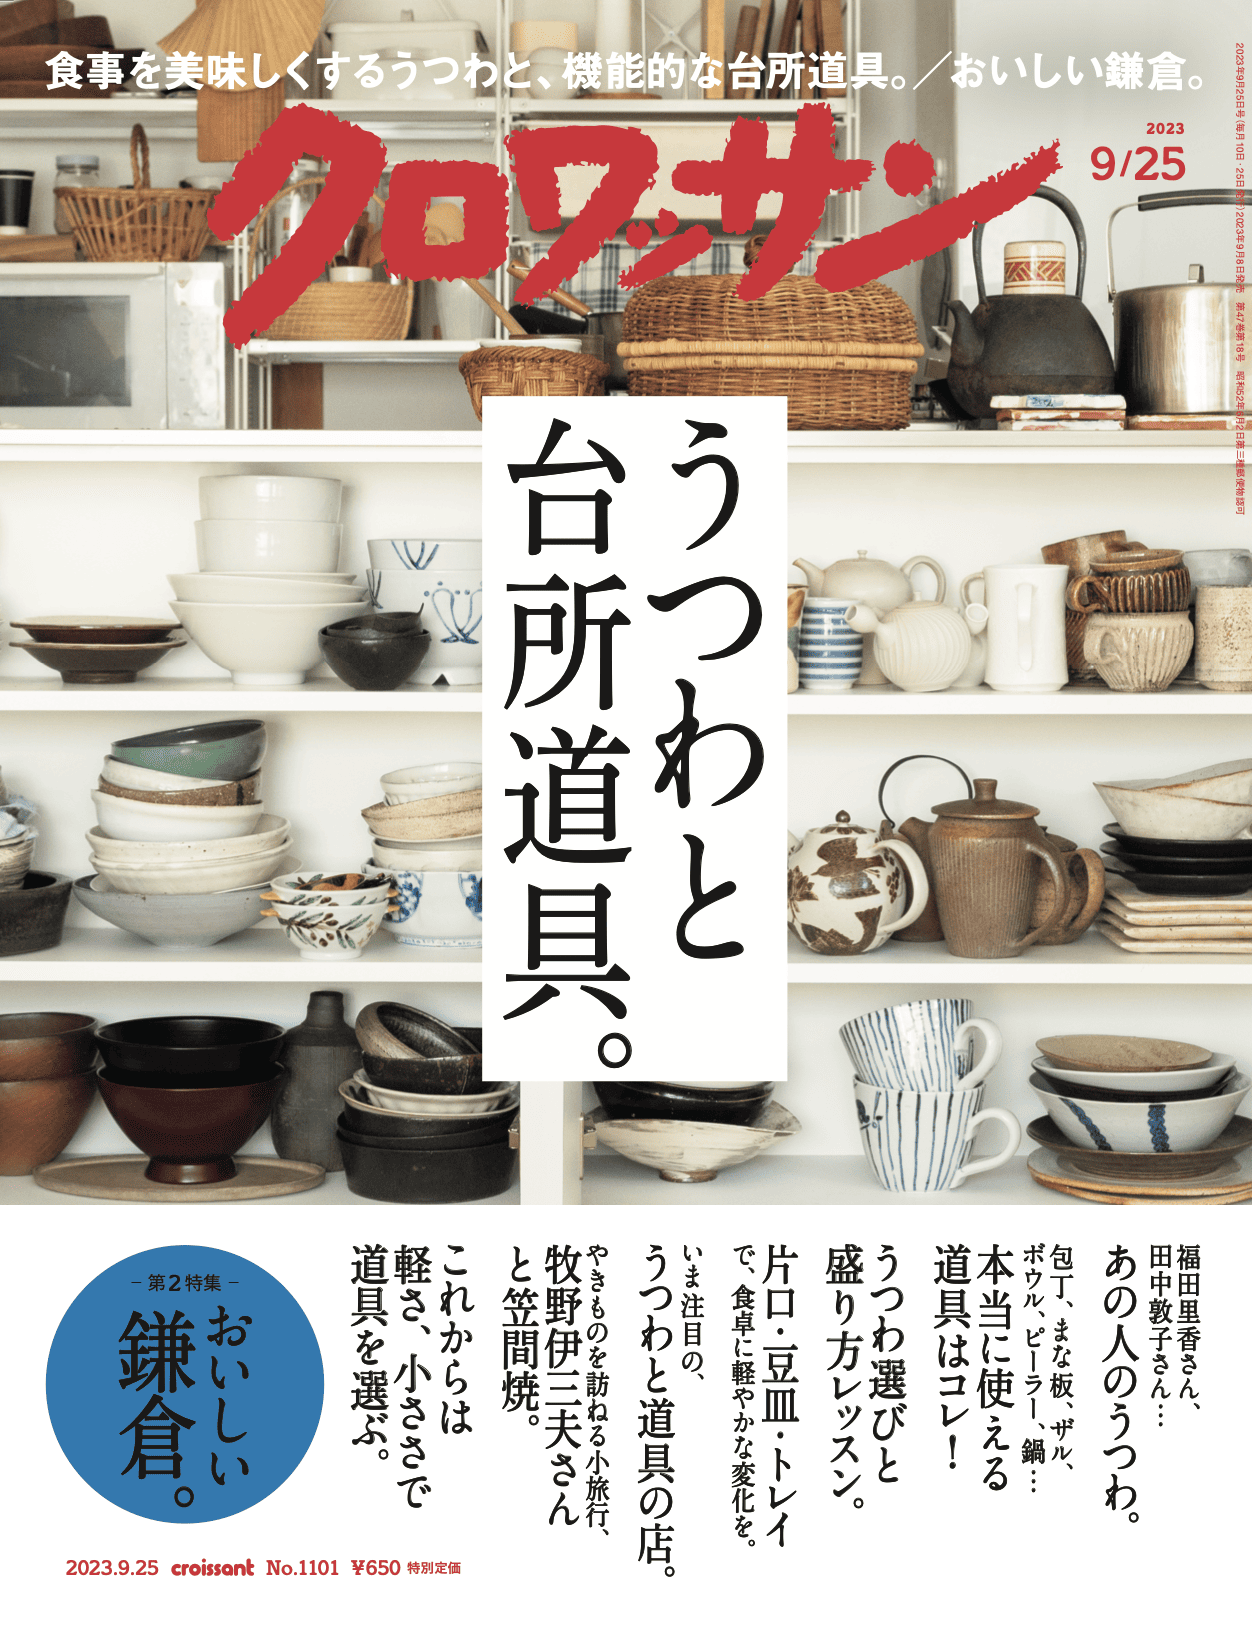 9月8日発売の『クロワッサン』最新号は「うつわと台所道具。」